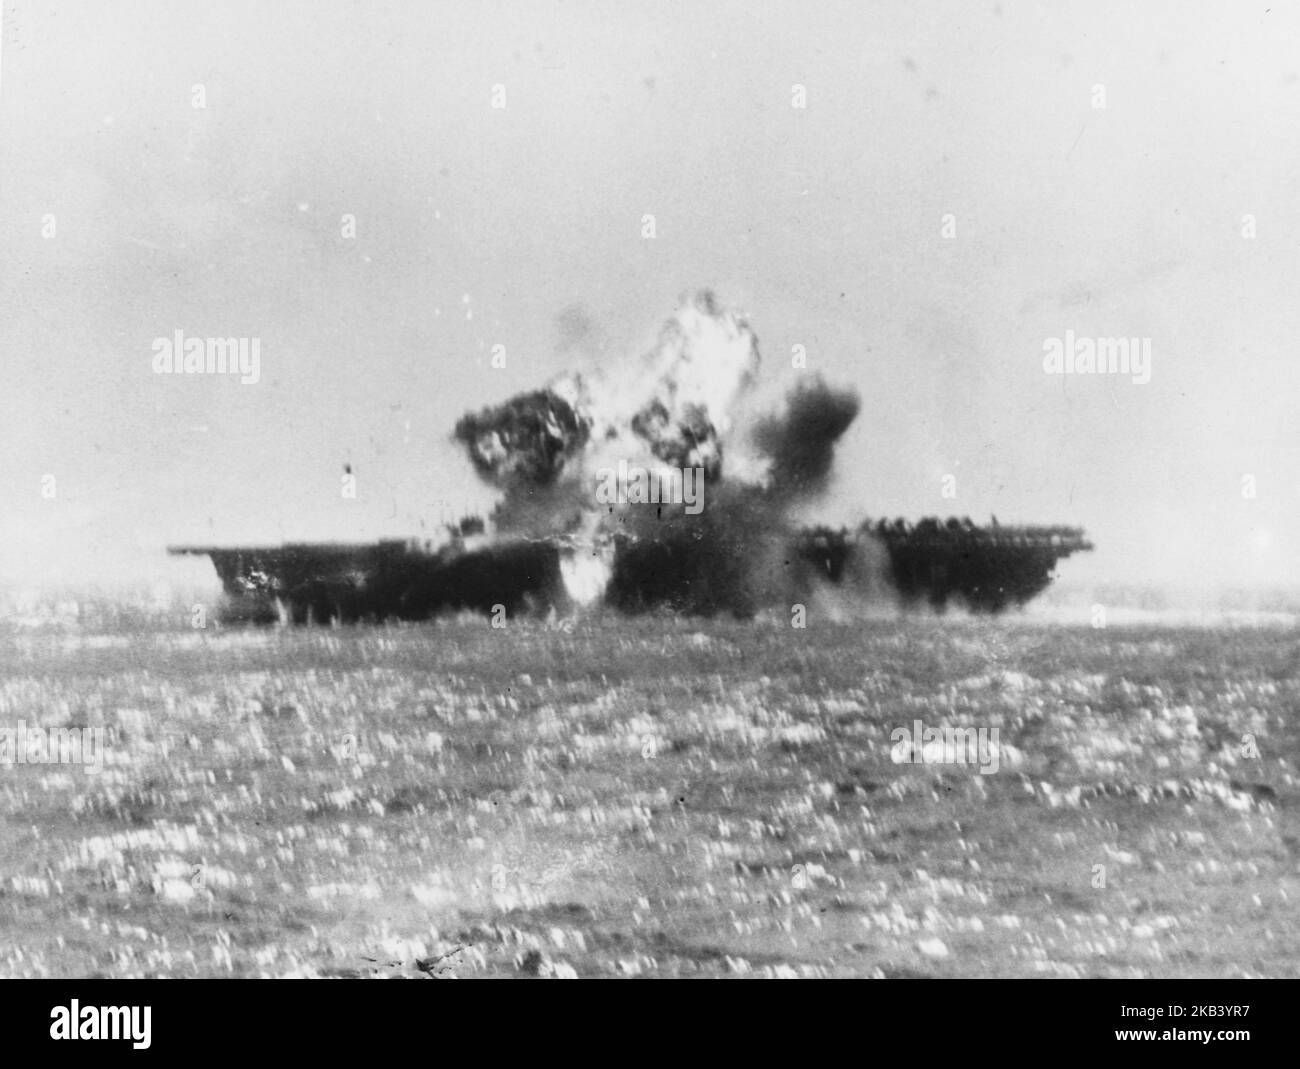 L'USS Essex est frappé par un Kamikaze au large des Philippines, le navire a été frappé par un avion japonais Yokosuka D4Y 'Judy' lors de l'attaque de Kamikaze le 25 novembre 1944 Banque D'Images